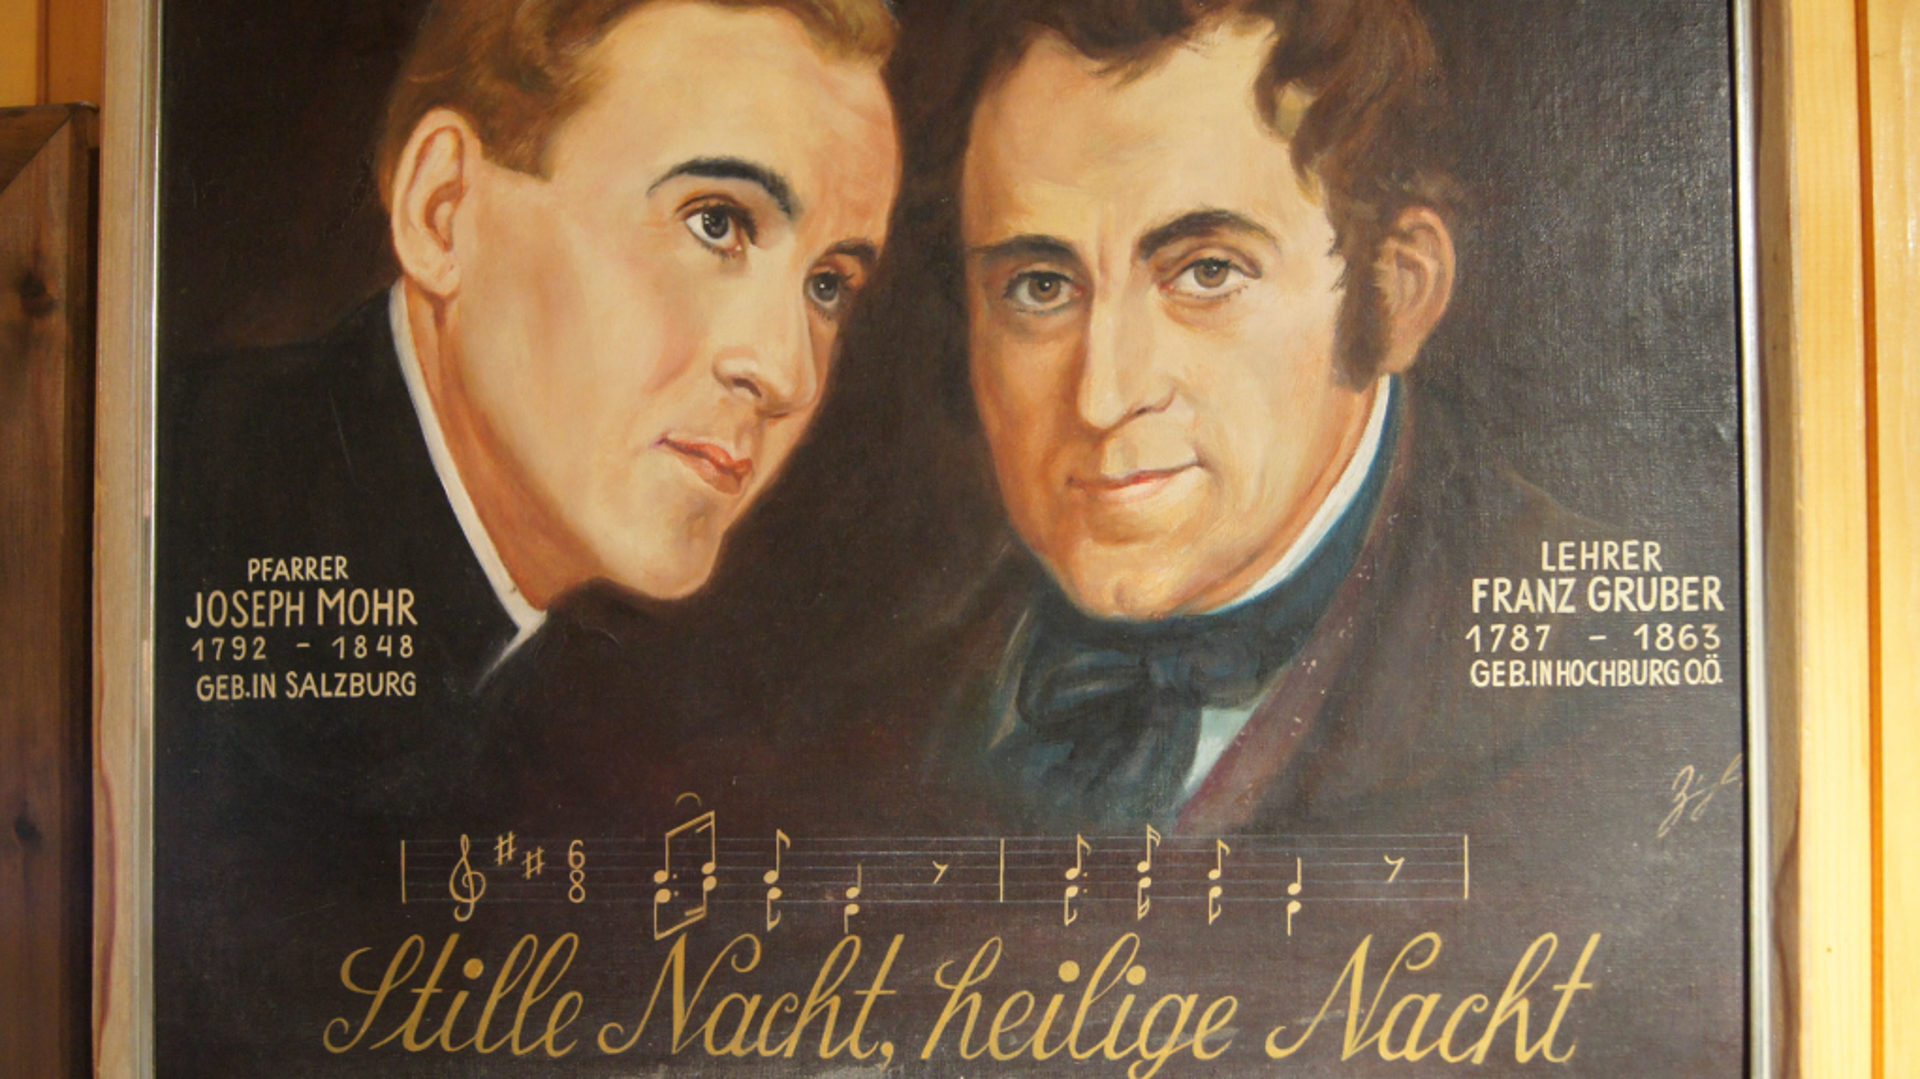 Joseph Mohr und Franz Xaver Gruber auf einem Gemälde.